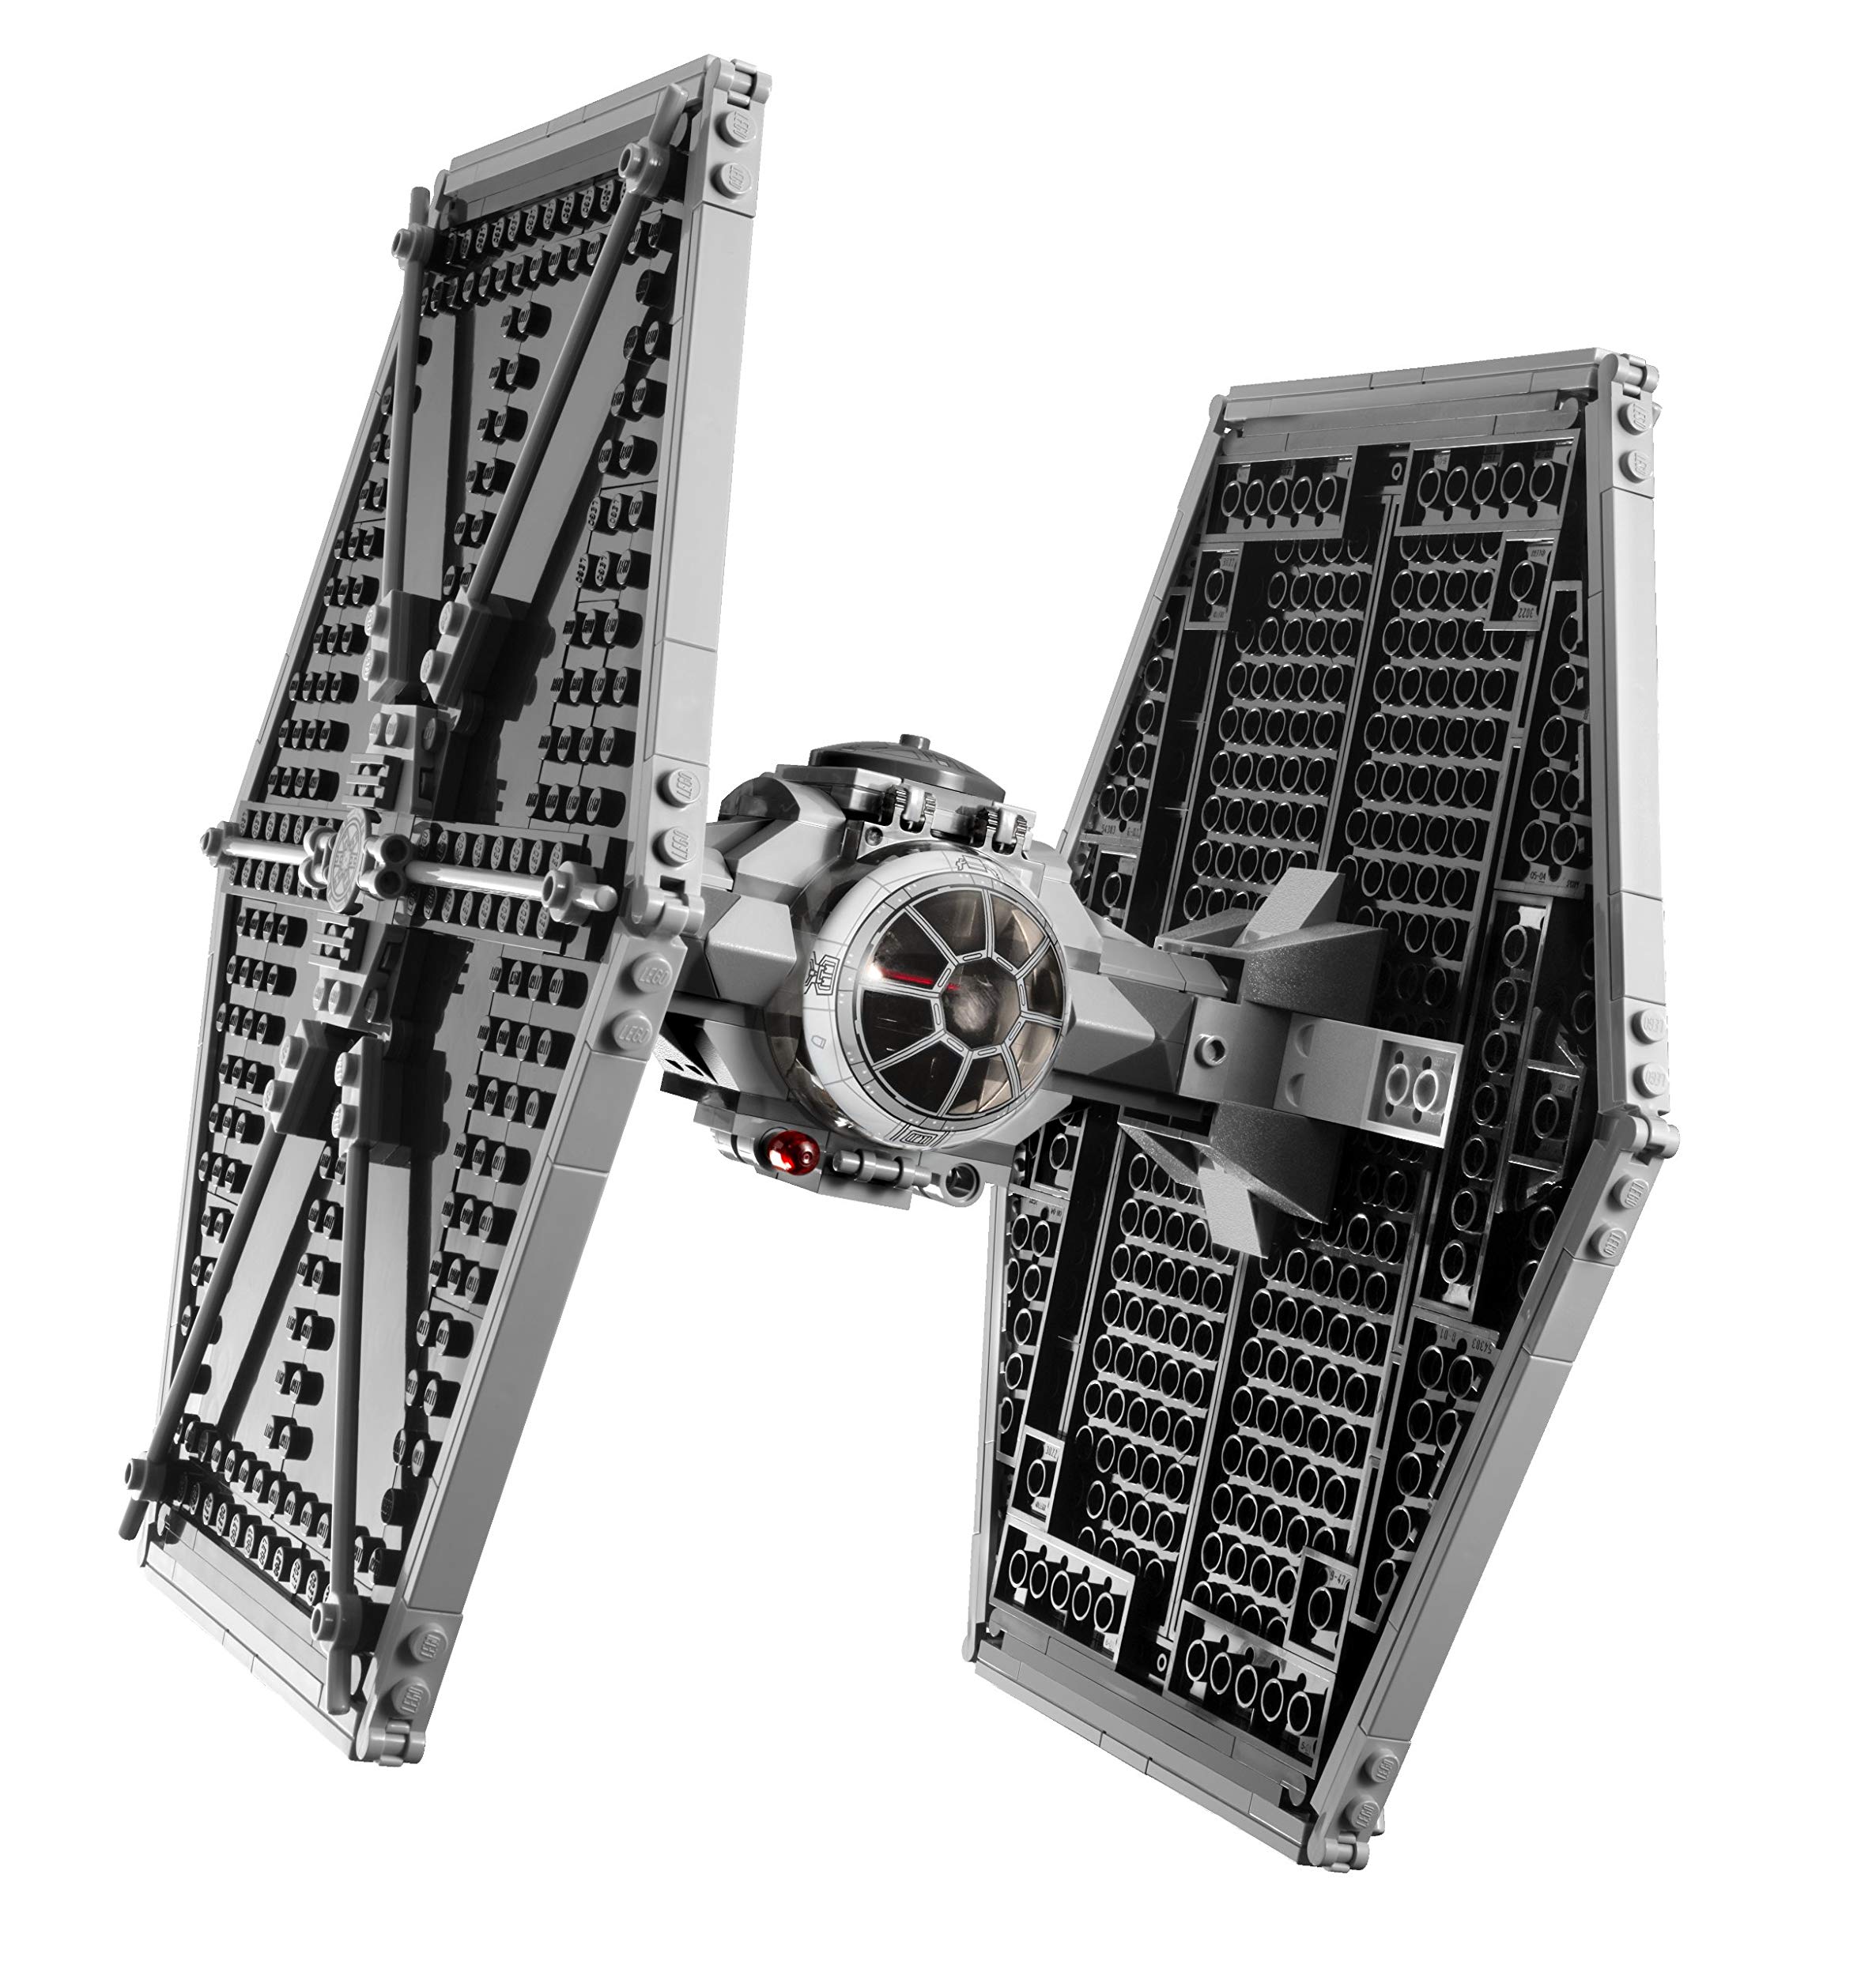 Lego Star Wars Tie Fighter